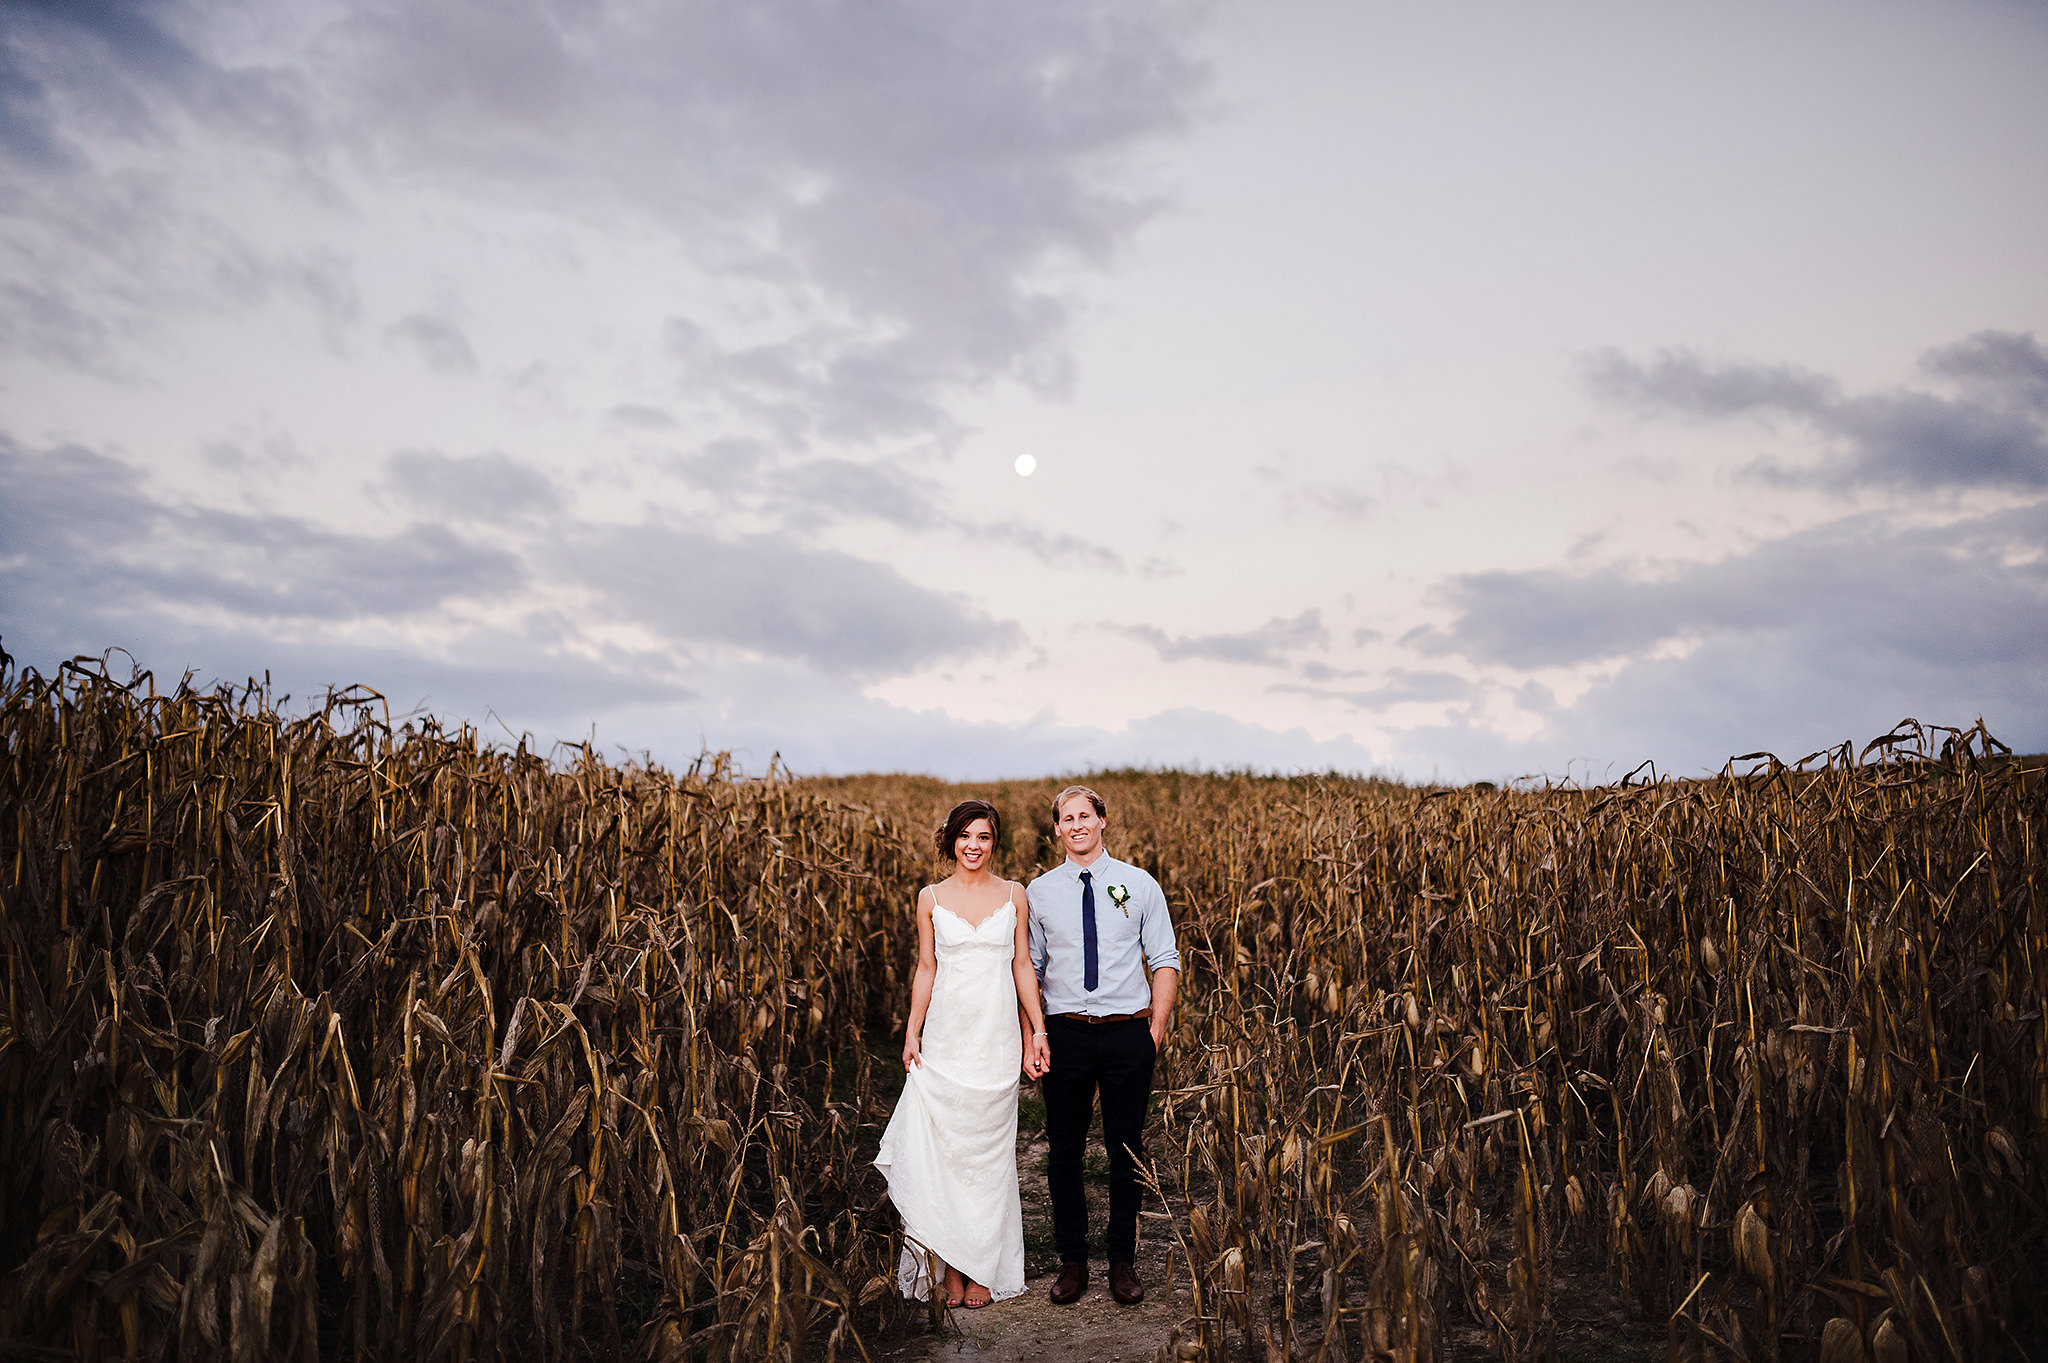 auckland wedding photographer cornfield at dusk.jpg